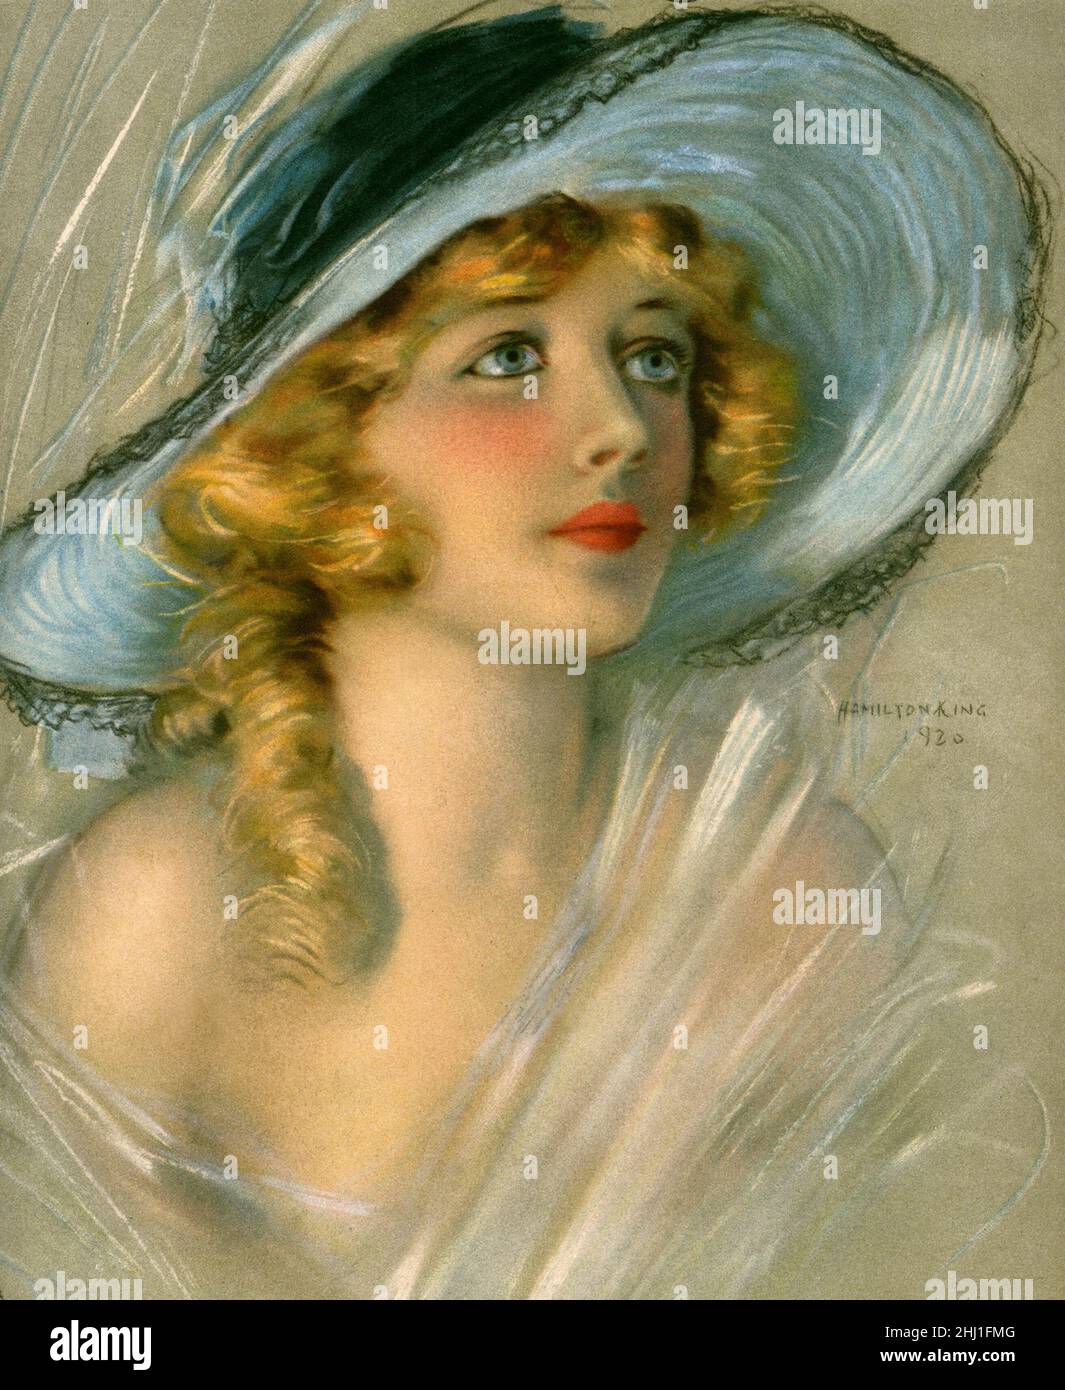 Hamilton King (American Portrait Artist) - Ritratto di Marion Davies (American Actress) - per la copertina di giugno 1920 di Theatre Magazine Foto Stock